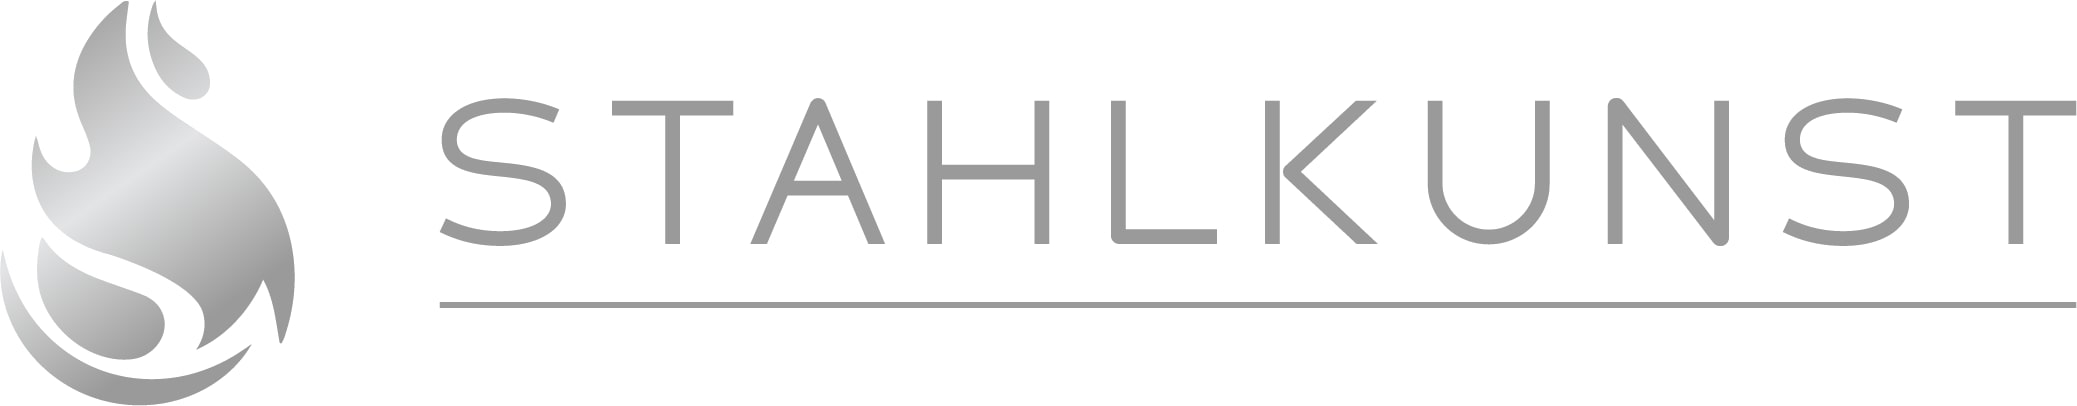 Stahlkunst Logo